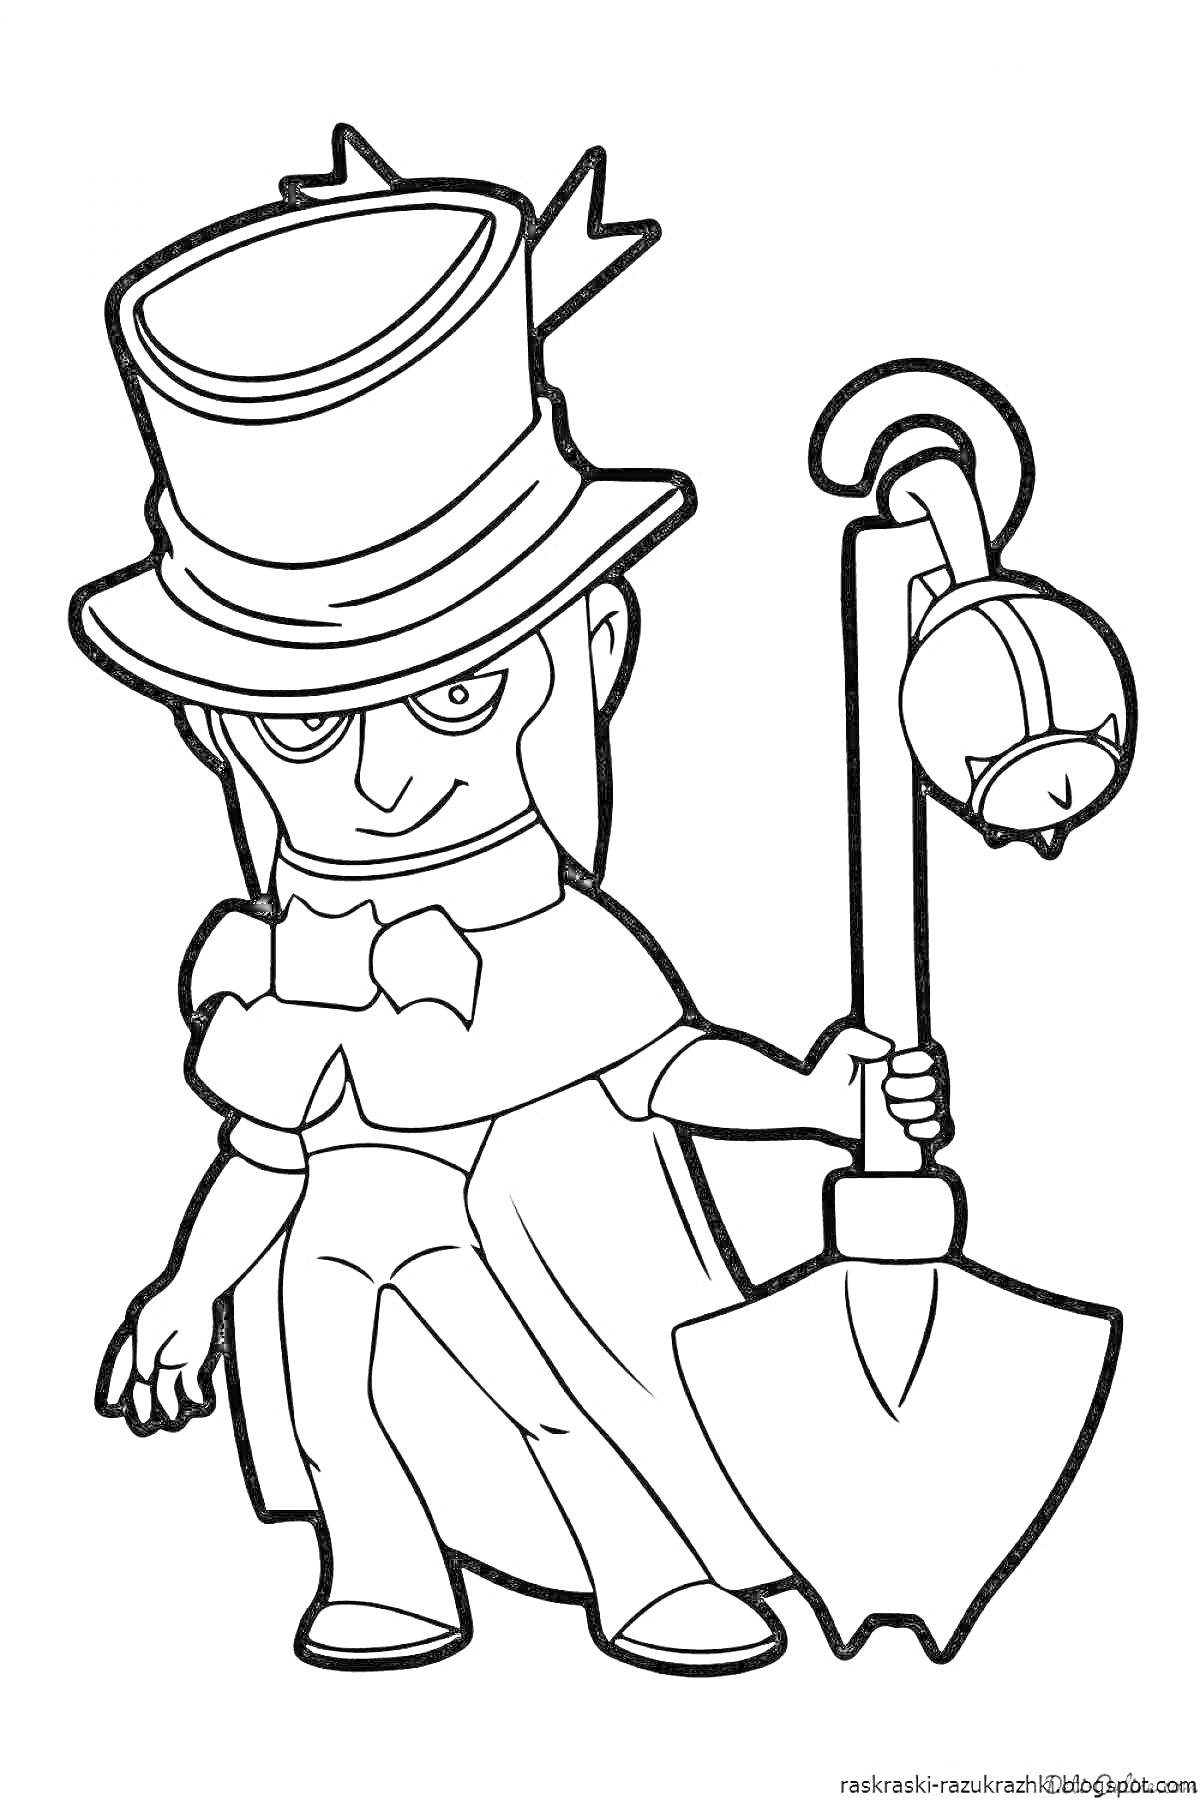 Раскраска Персонаж в цилиндре с маской, держащий лопату и колокольчик